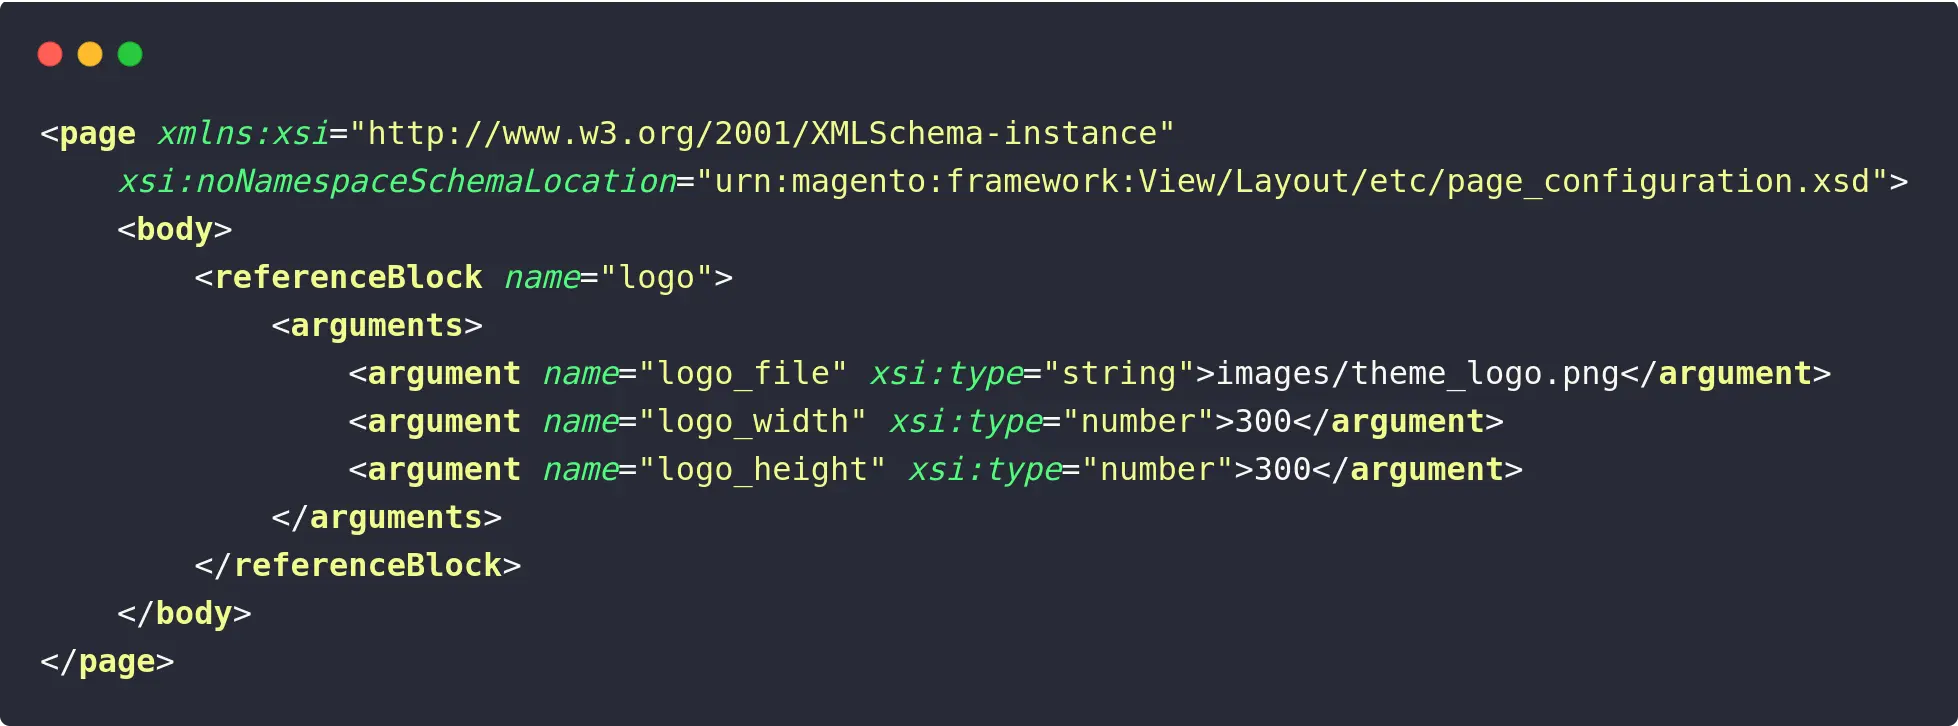 Declaring Theme Logo Post XML